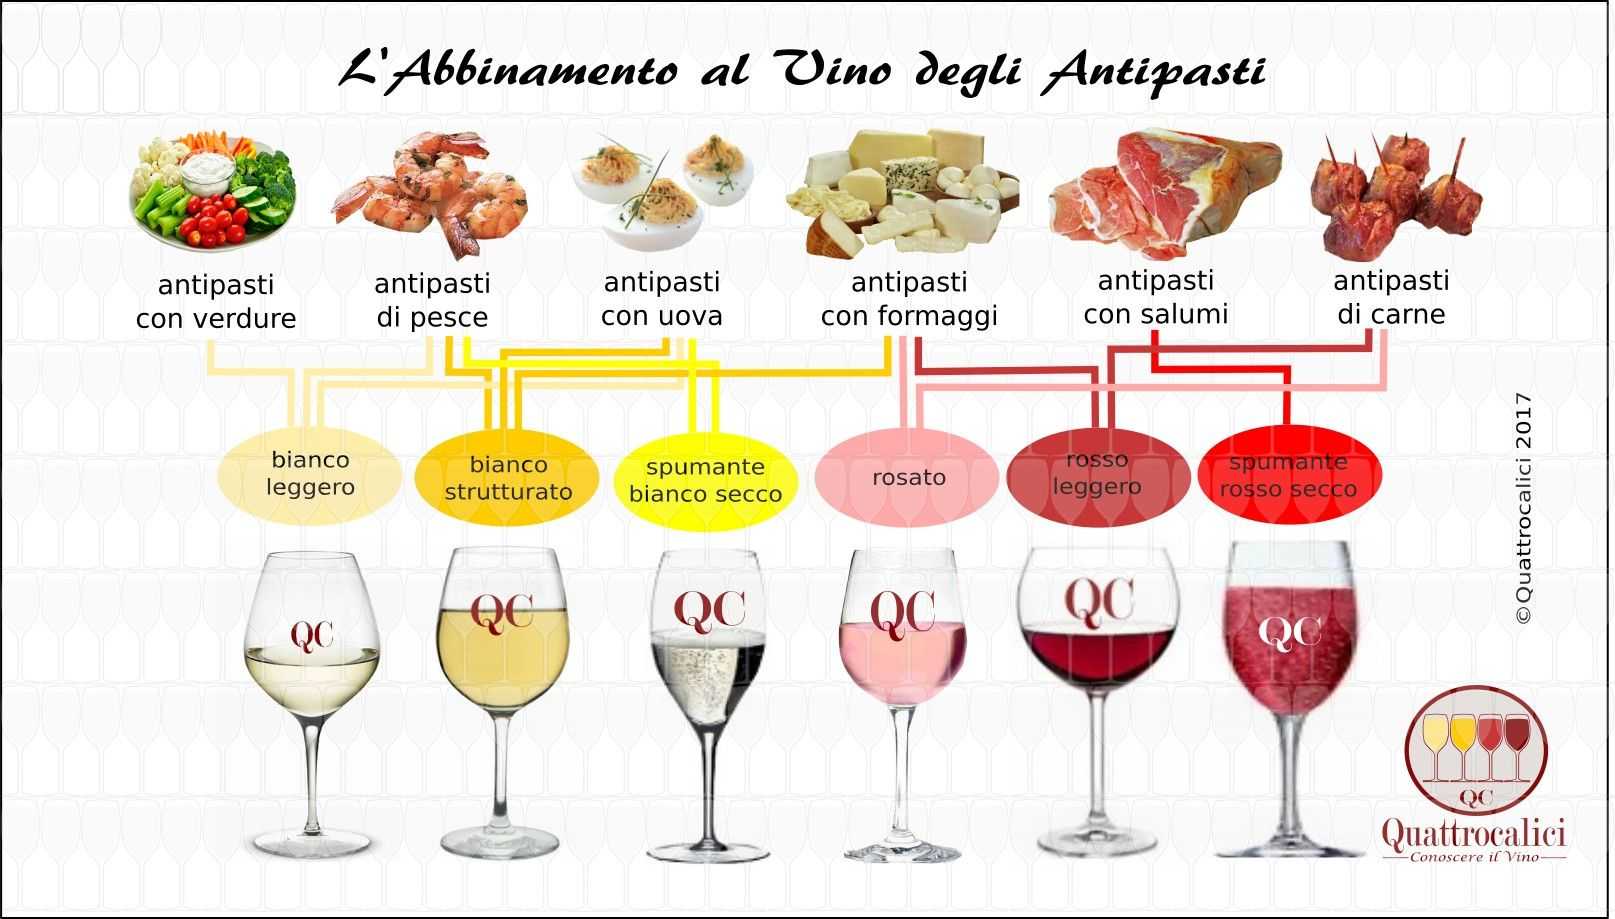 Вино к крабам, мидиям и другим морепродуктам, какое вино лучше сочетается с раками и гребешками